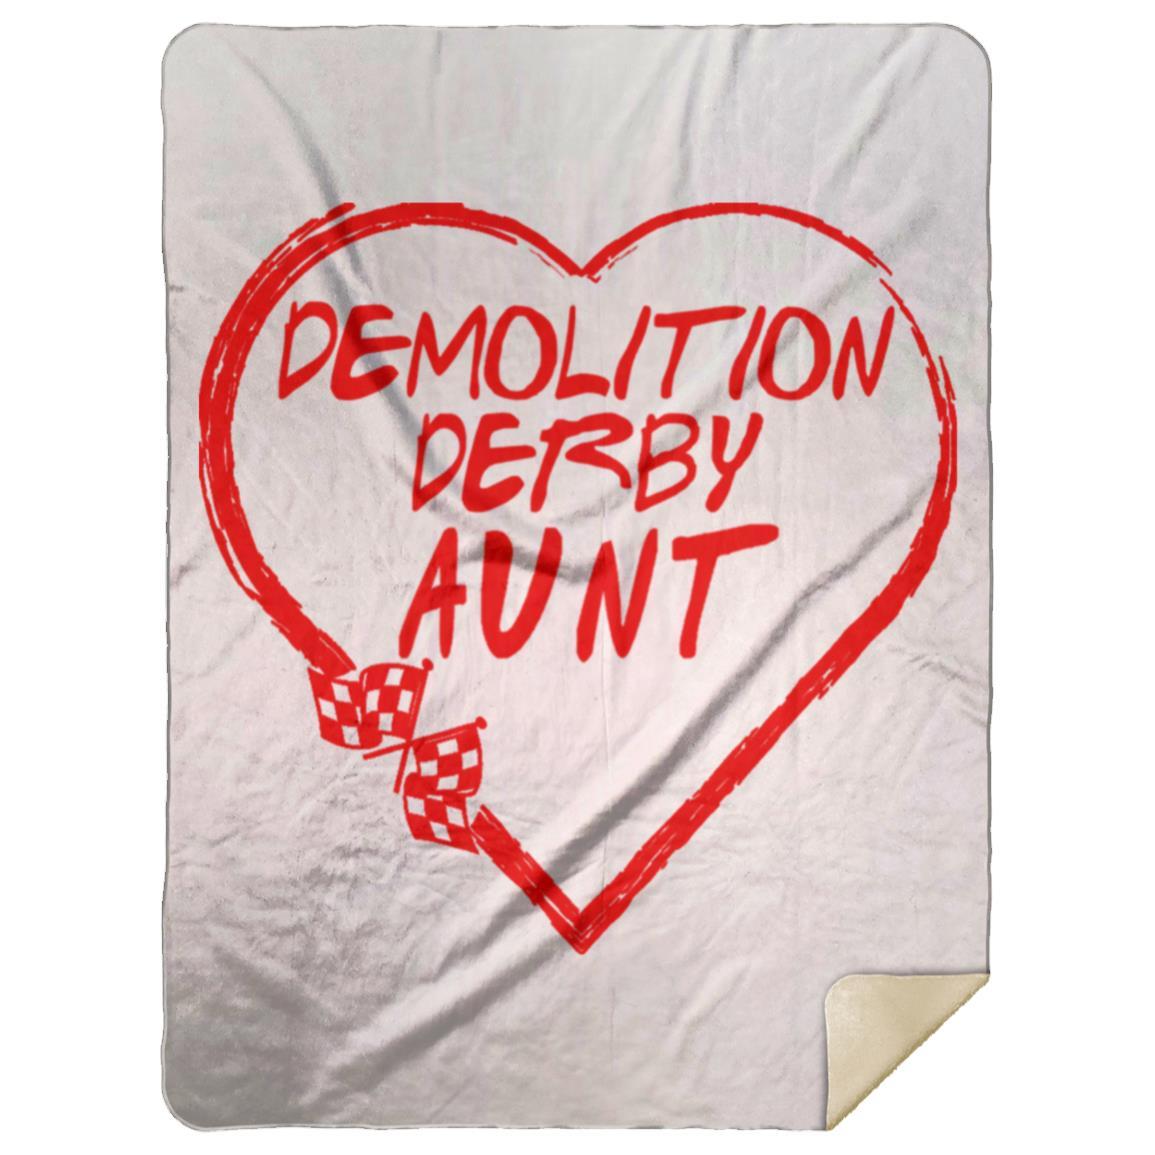 Demolition Derby Aunt Heart Premium Mink Sherpa Blanket 60x80